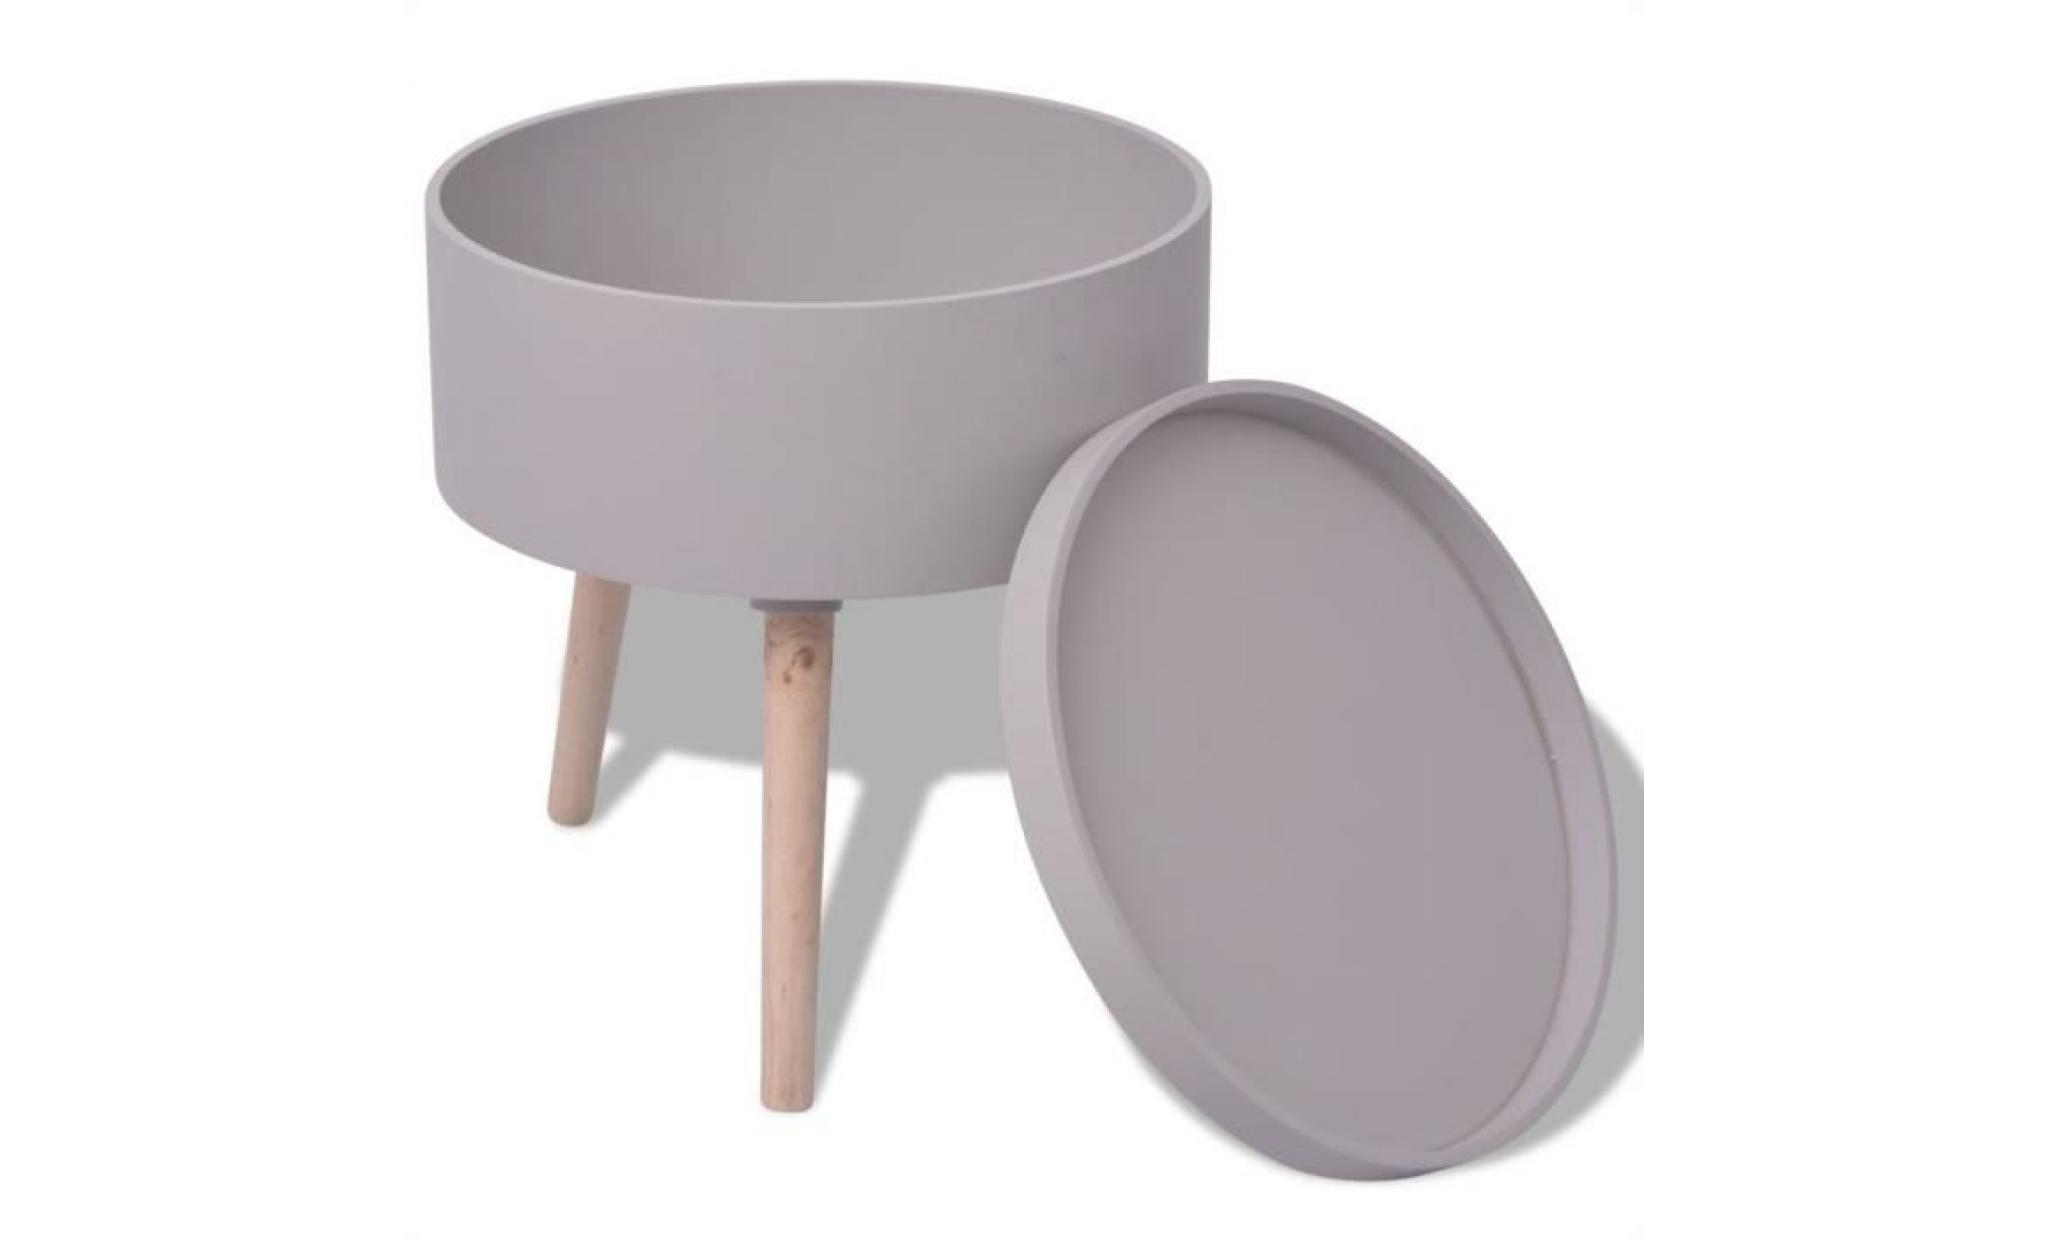 r46 cette table auxiliaire ronde avec plateau, avec son design elegant, pratique et durable, s'accordera avec n'importe